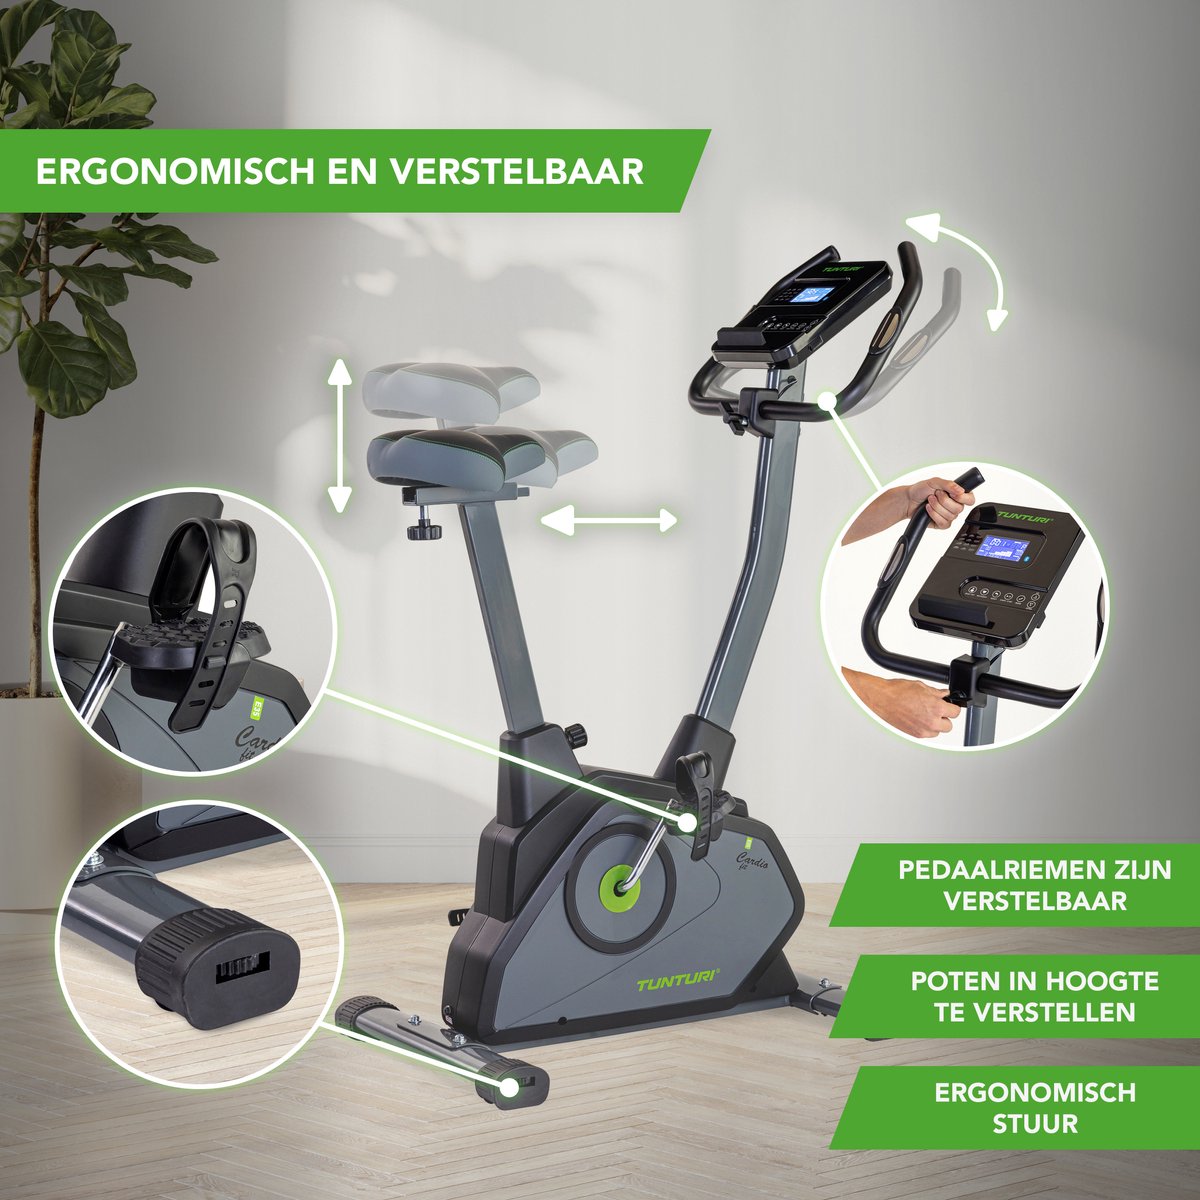 Tunturi Cardio Fit E35 Hometrainer - Ergometer - Bluetooth - fitnessfiets  met 12... | bol.com